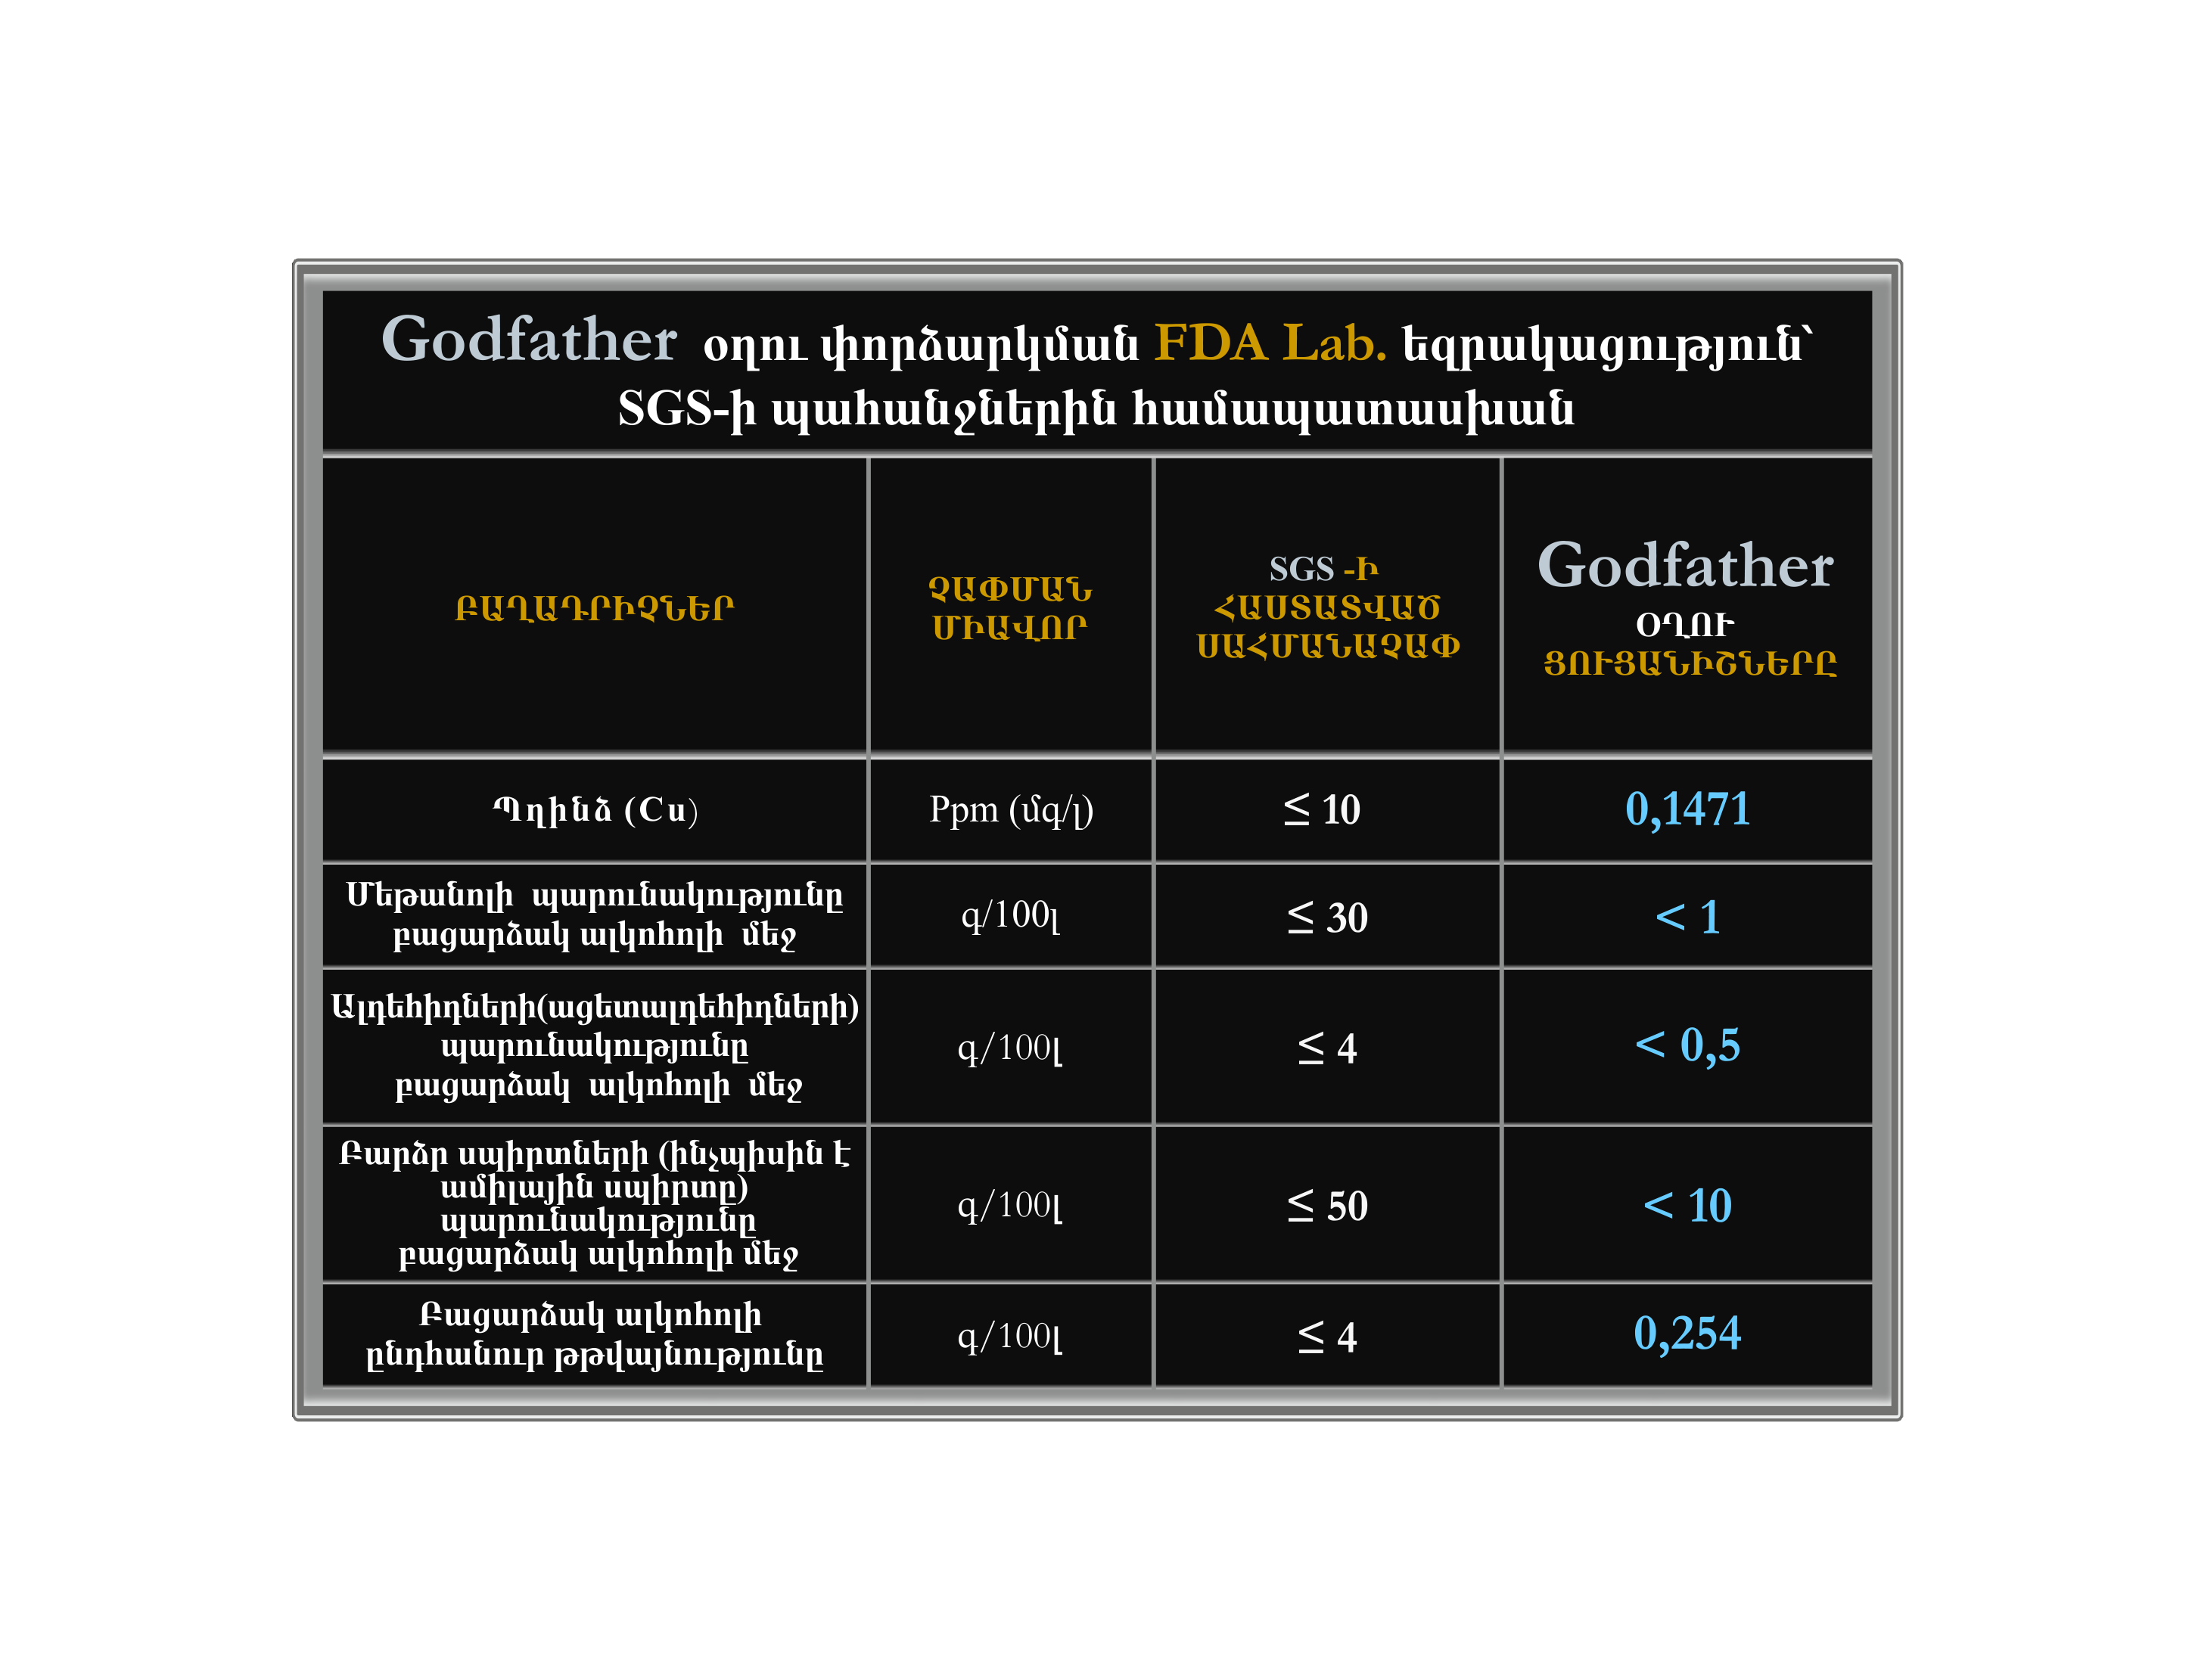 tablica-godfather